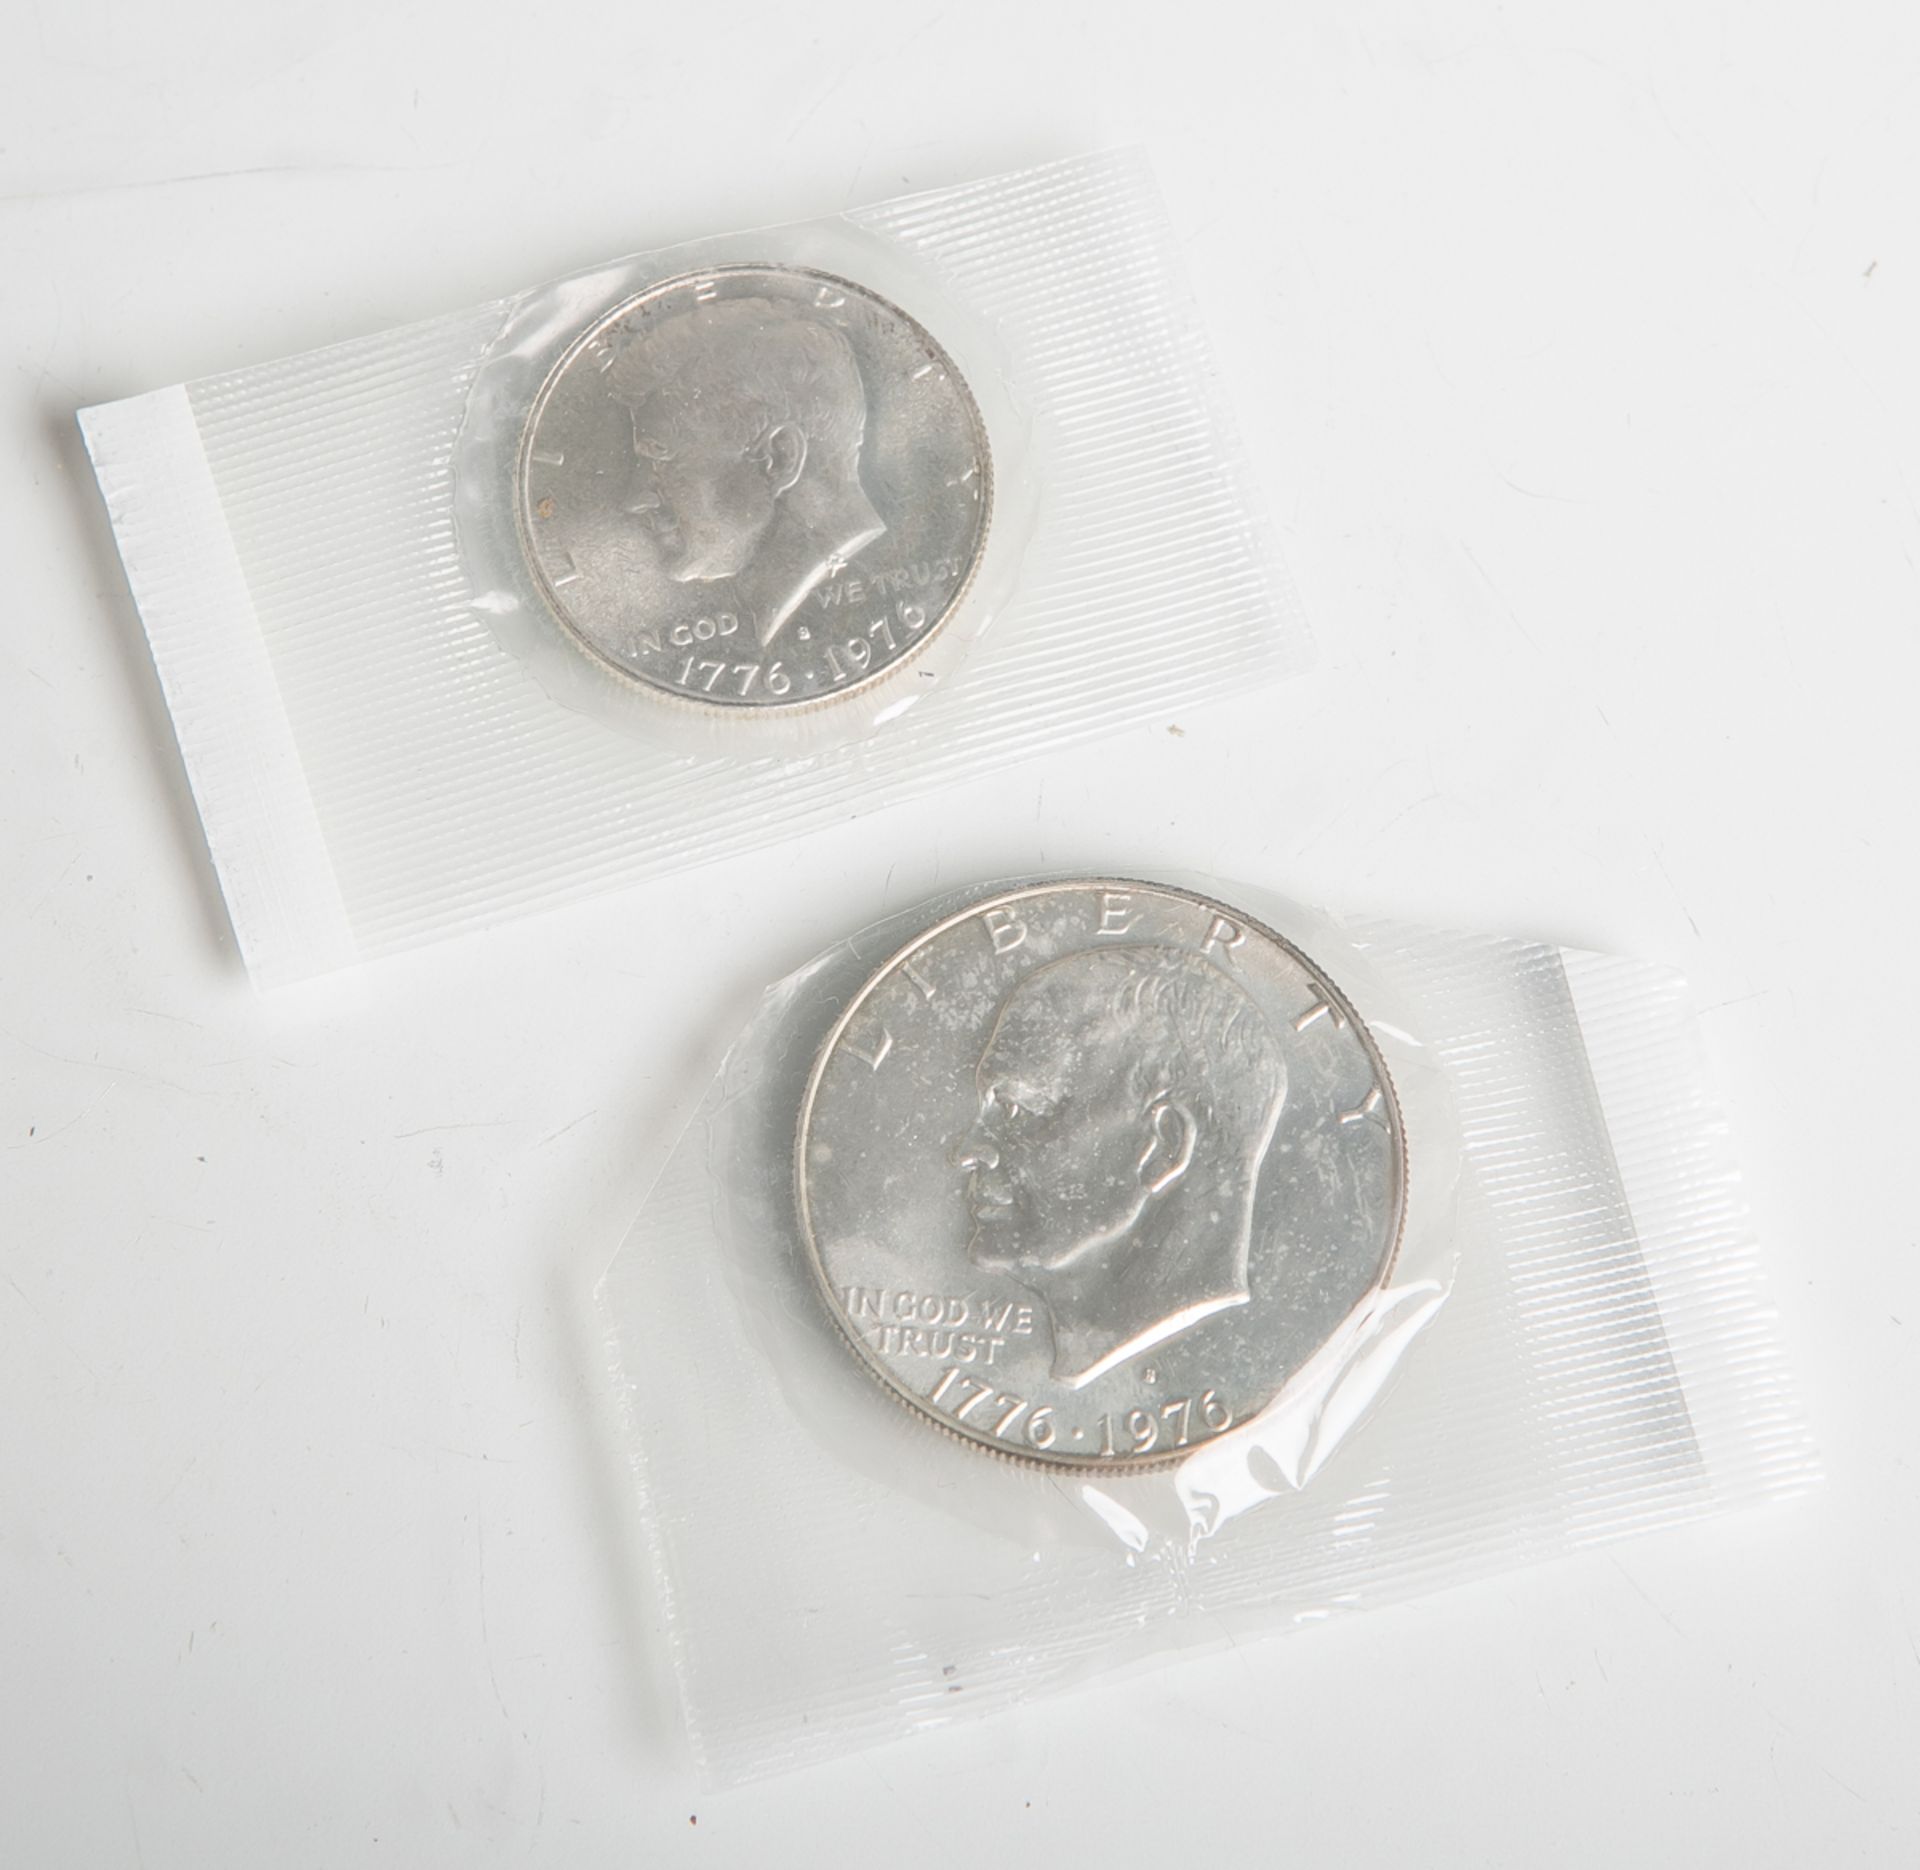 Kl. Konvolut von 2 Münzen (USA, 1976), bestehend aus: 1x One Dollar "Liberty", sog.Eisenhower-Dollar